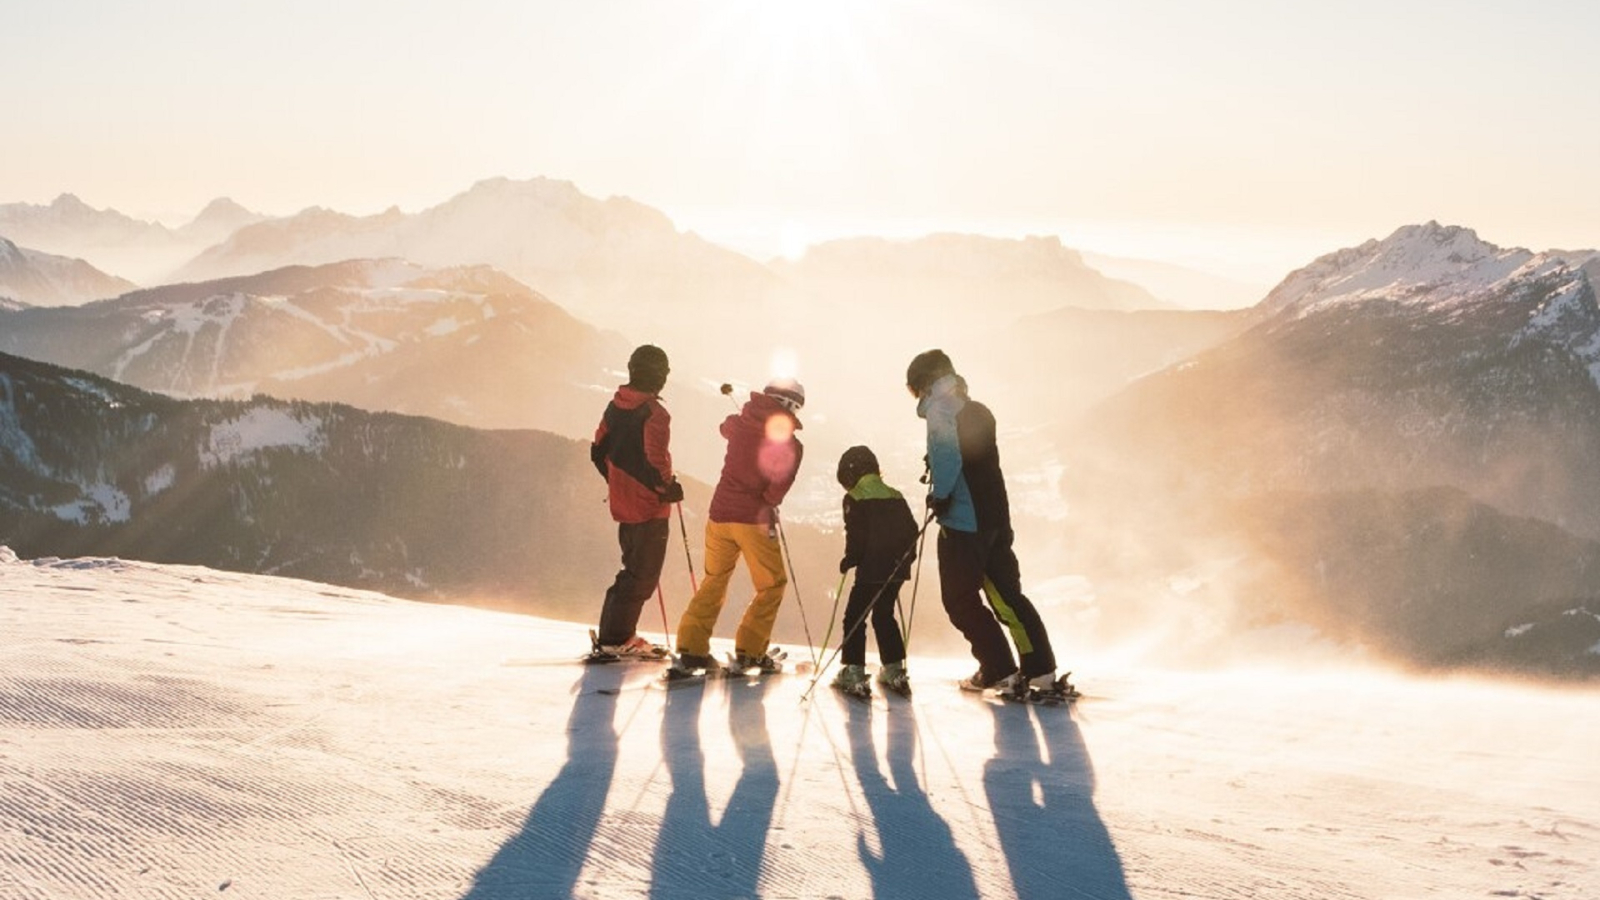 Ski alpin en famille au coucher de soleil sur le domaine skiable du Grand-Bornand